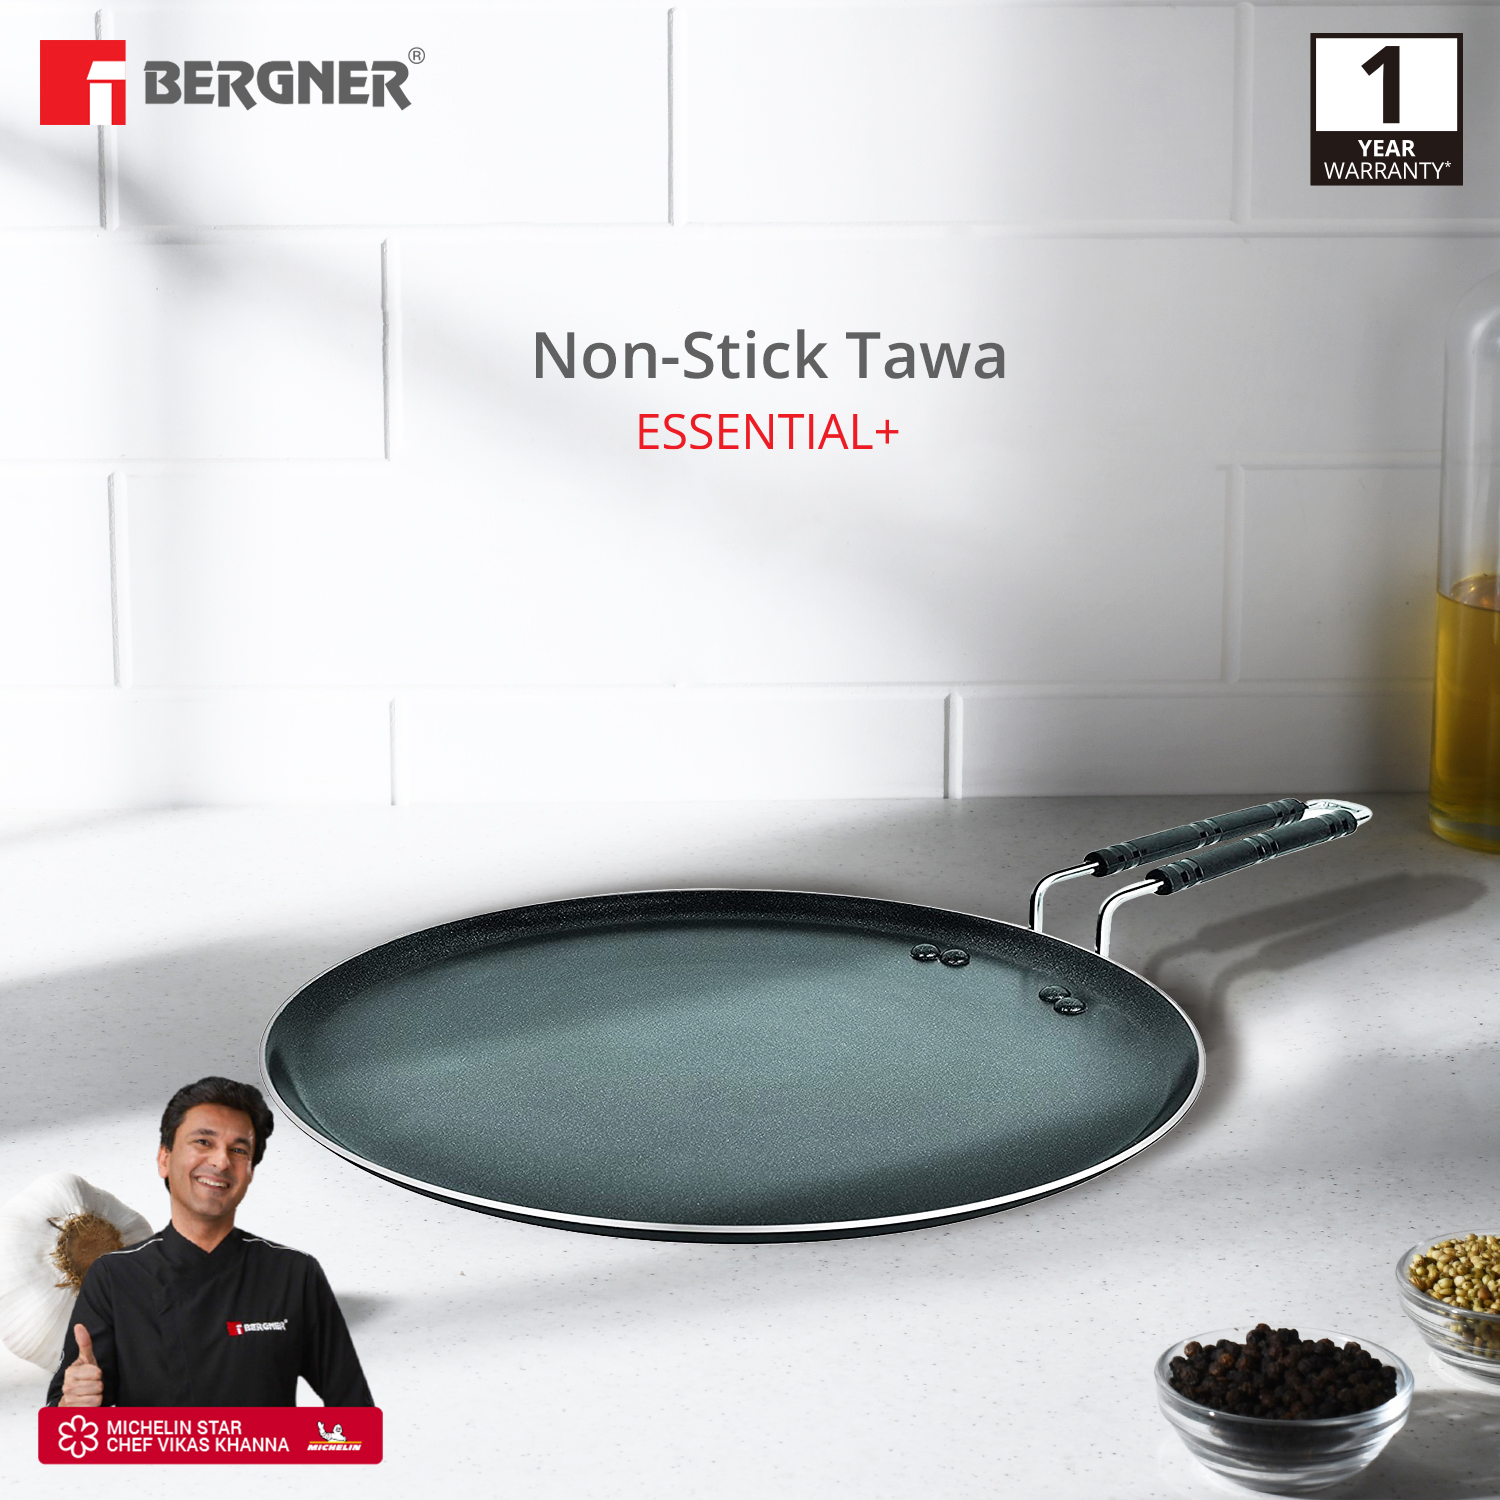 Bergner Essential Plus Non-stick Tawa, Black - 31cm